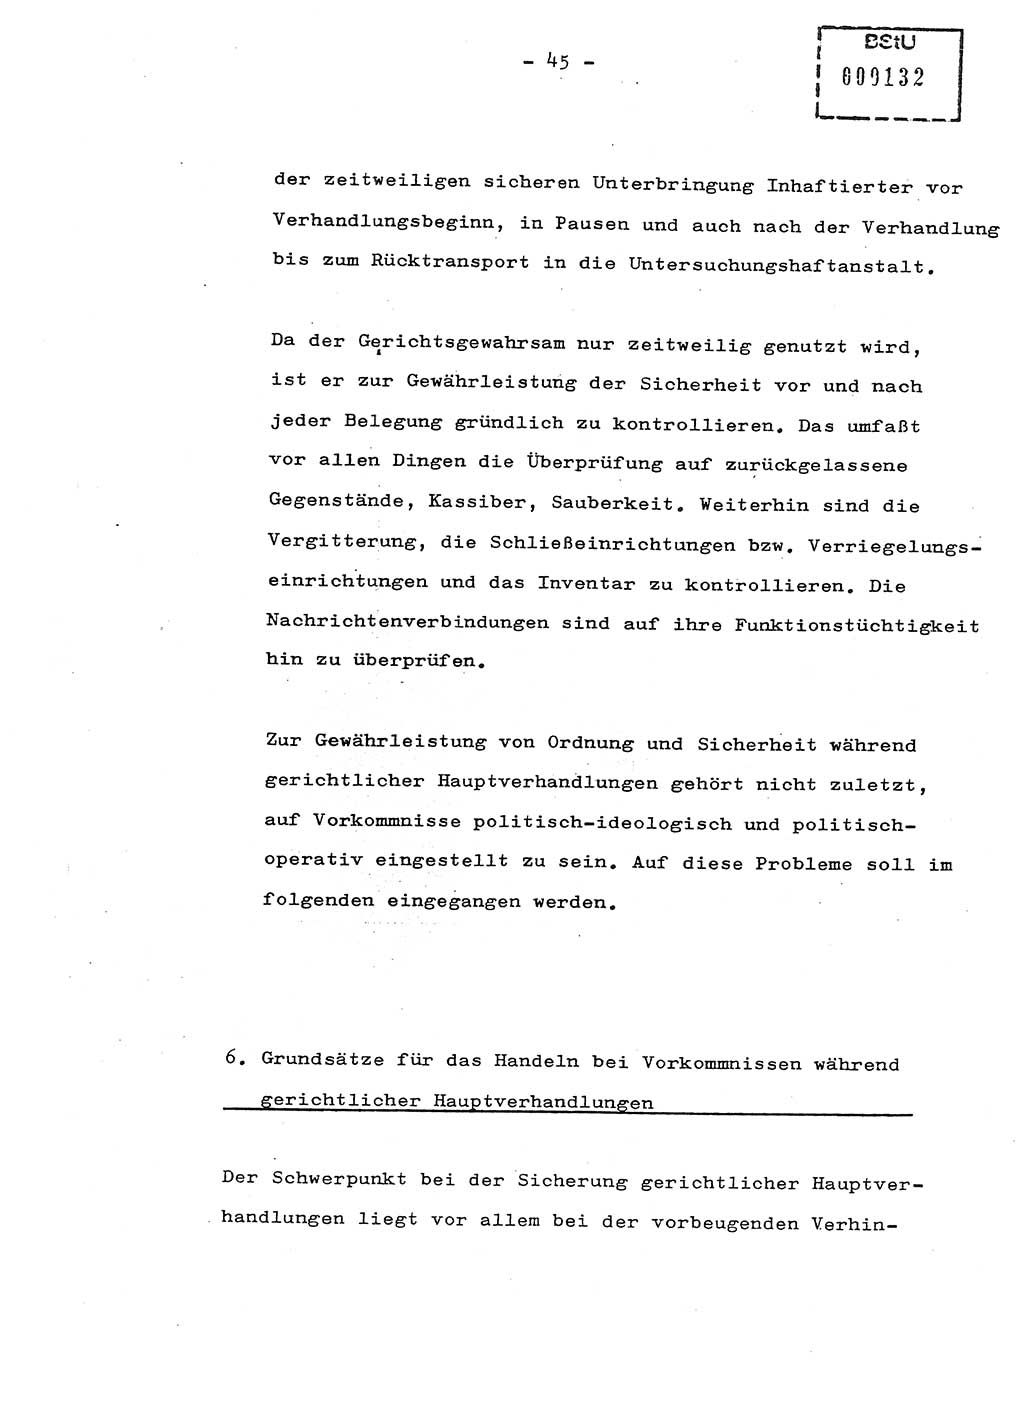 Schulungsmaterial Exemplar-Nr.: 8, Ministerium für Staatssicherheit [Deutsche Demokratische Republik (DDR)], Abteilung (Abt.) ⅩⅣ, Berlin 1987, Seite 45 (Sch.-Mat. Expl. 8 MfS DDR Abt. ⅩⅣ /87 1987, S. 45)